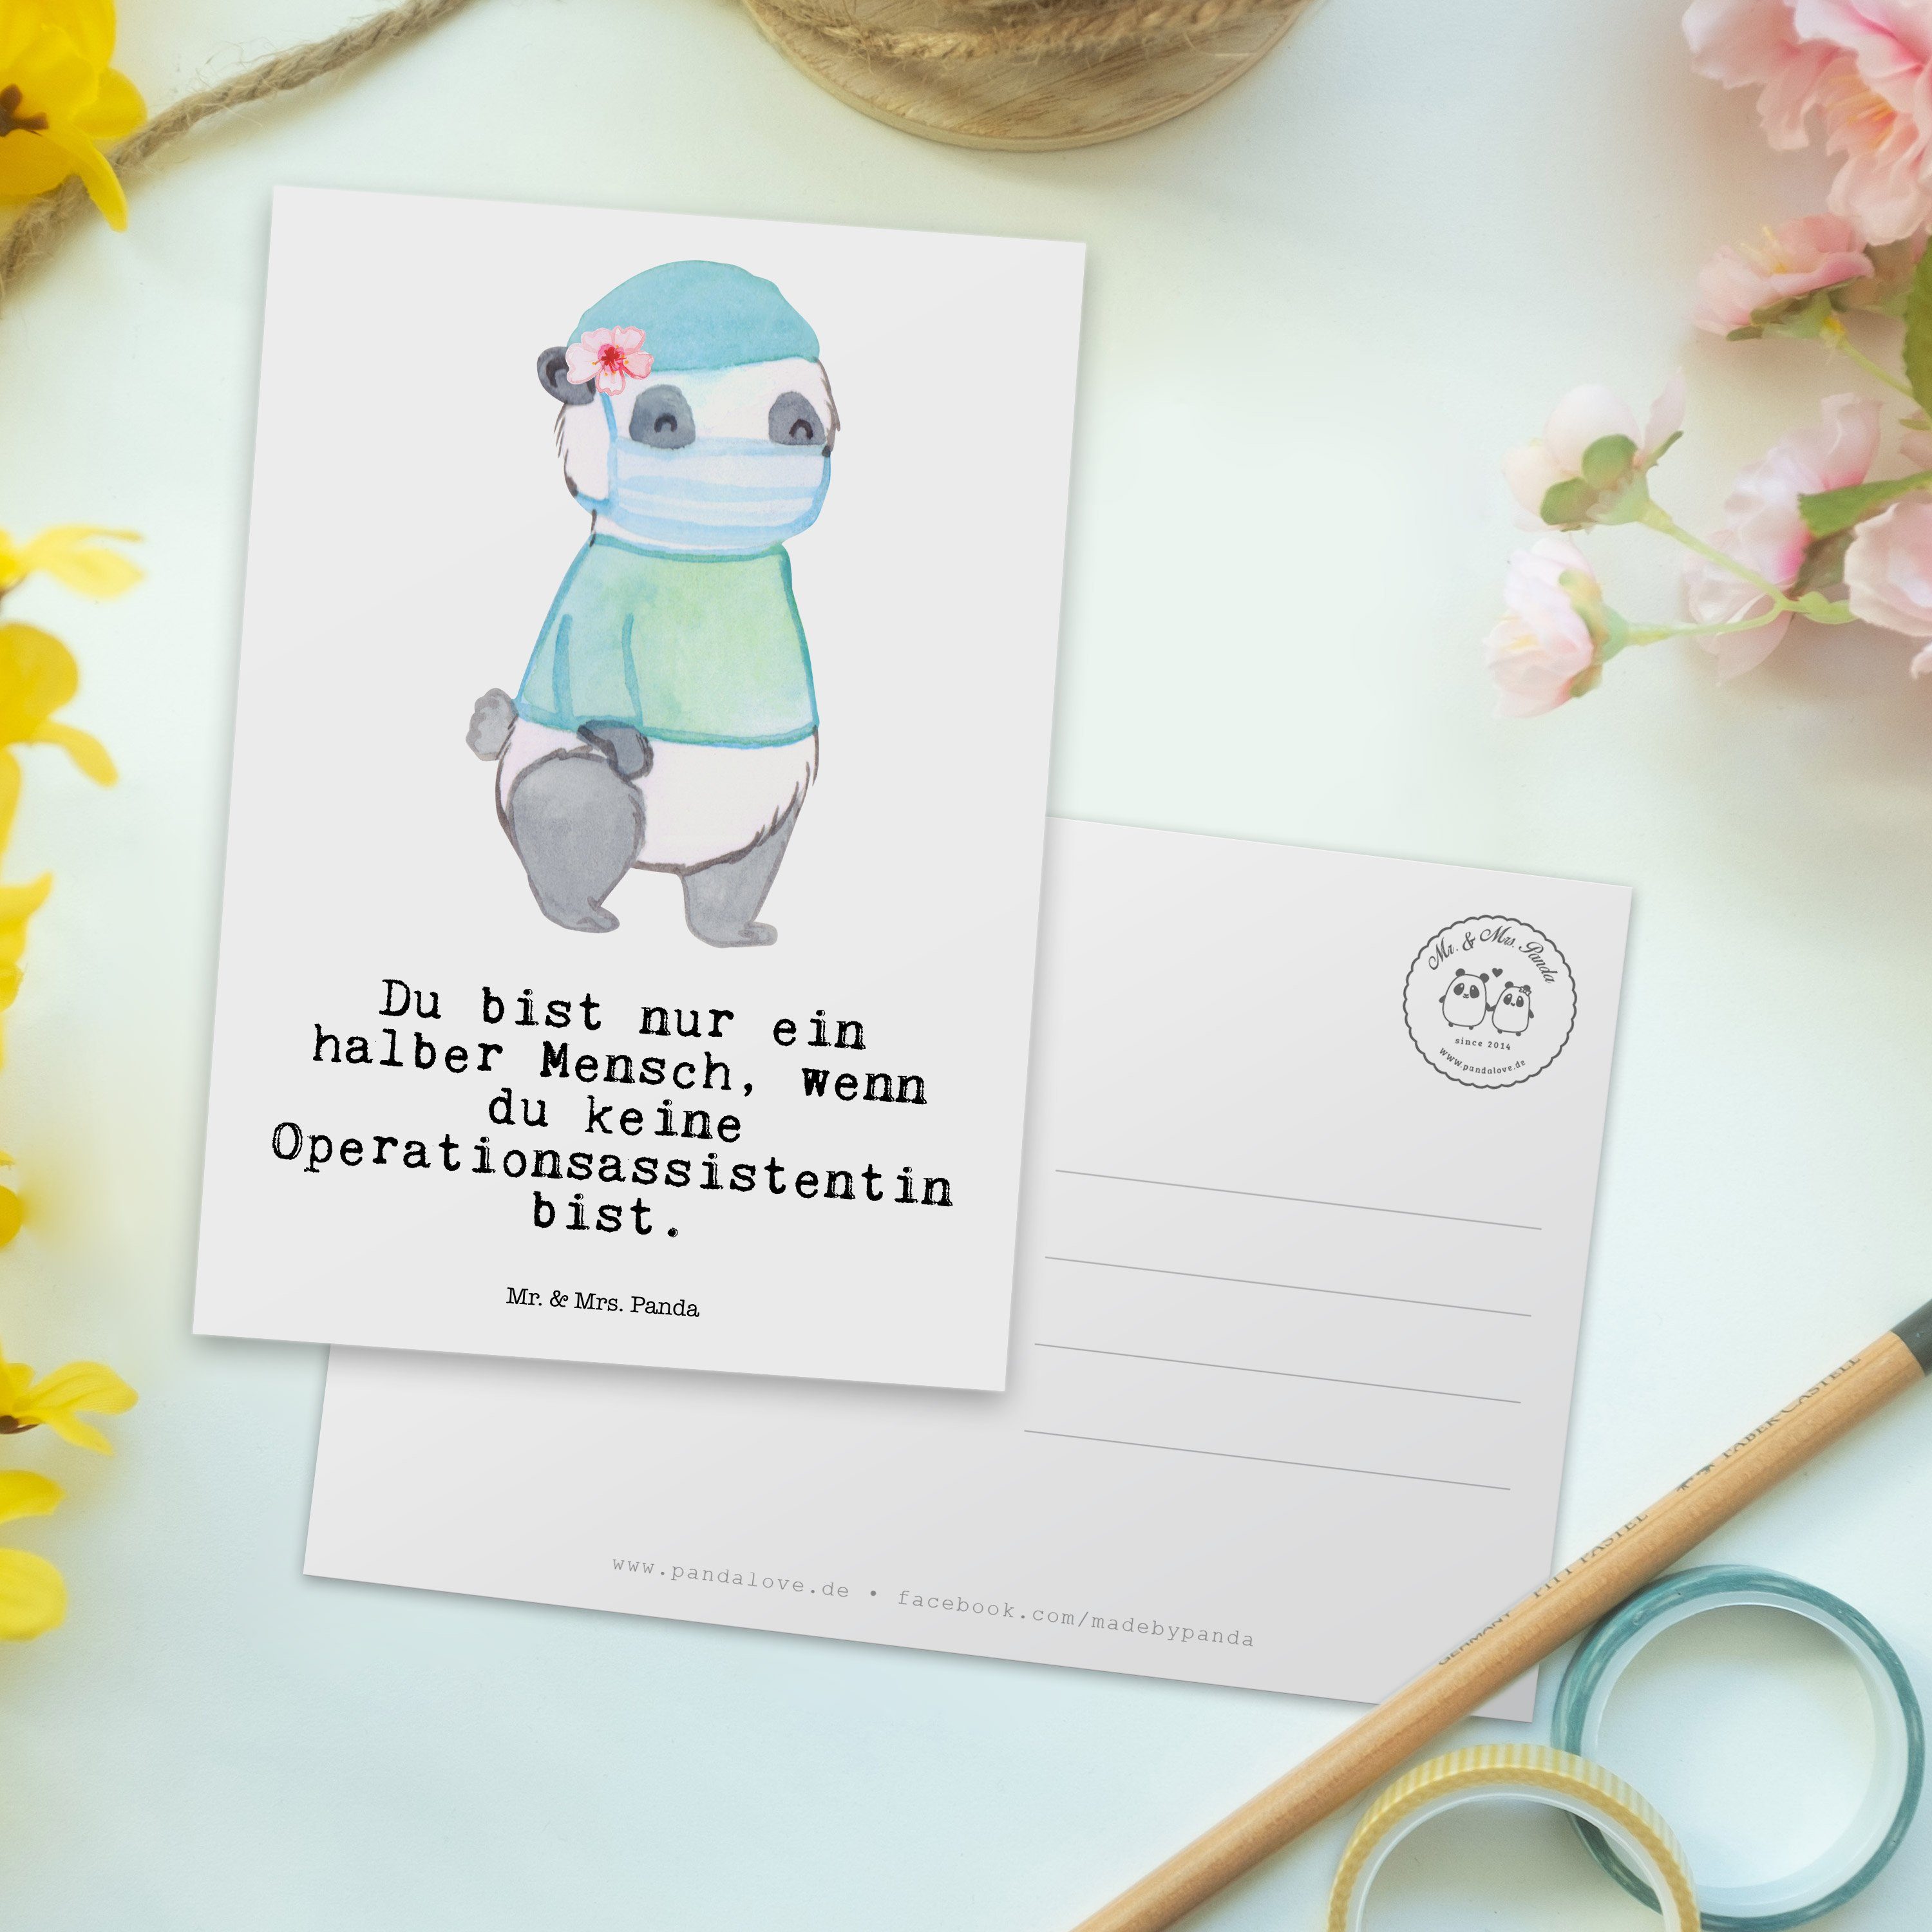 Mr. & Mrs. Panda - Geschenk, Operationsassistentin - mit Weiß Dankeschön Firma, Herz Postkarte